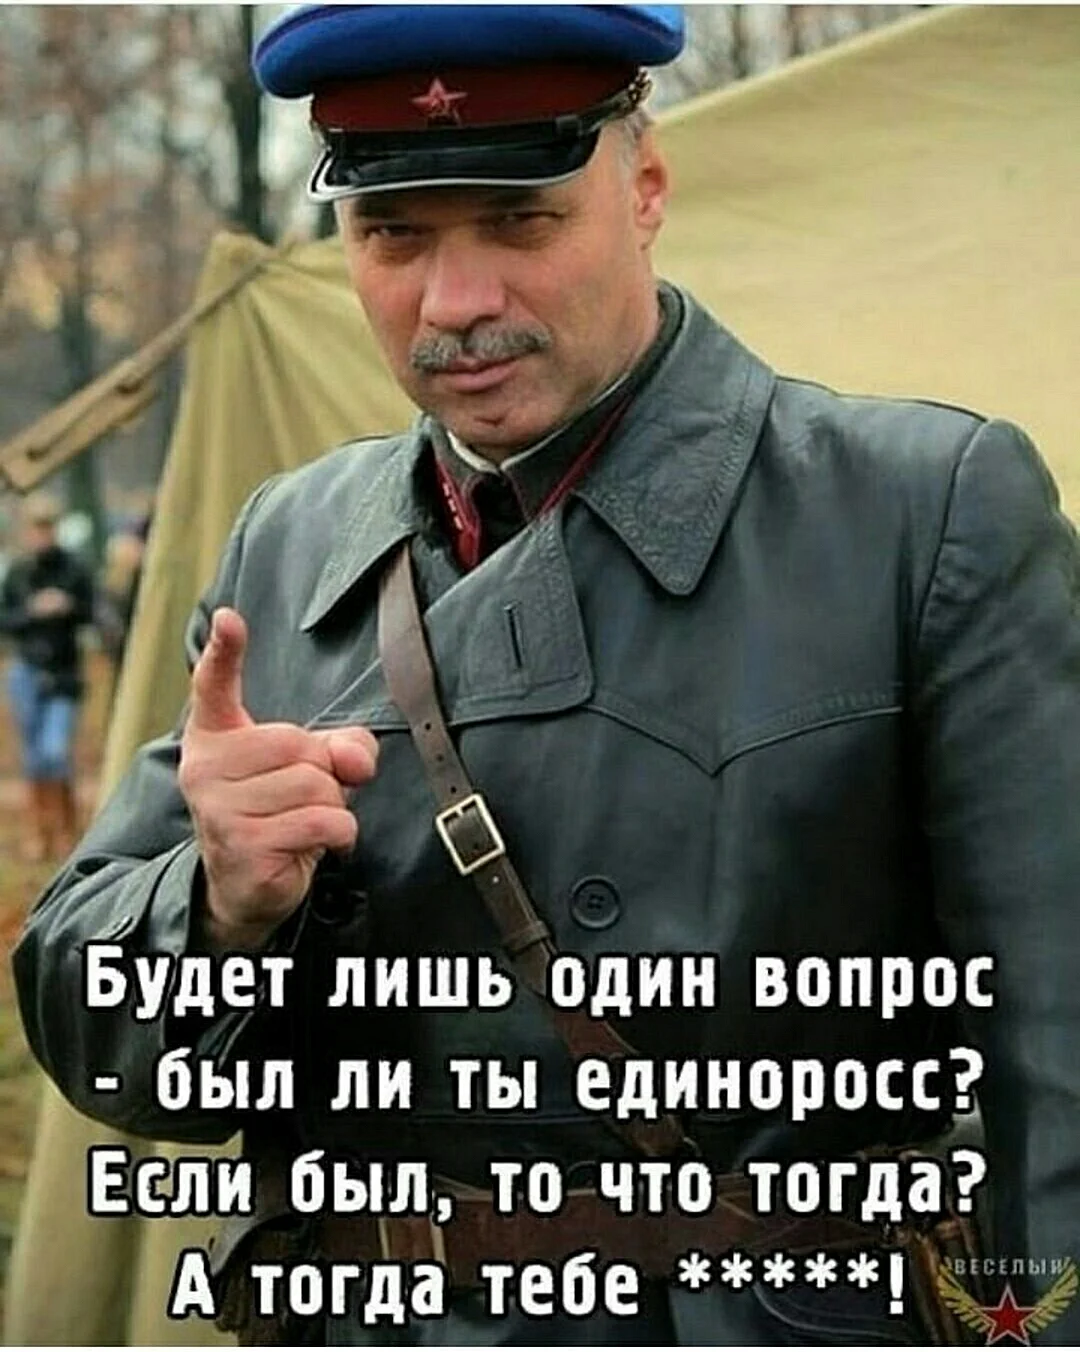 Комиссар НКВД